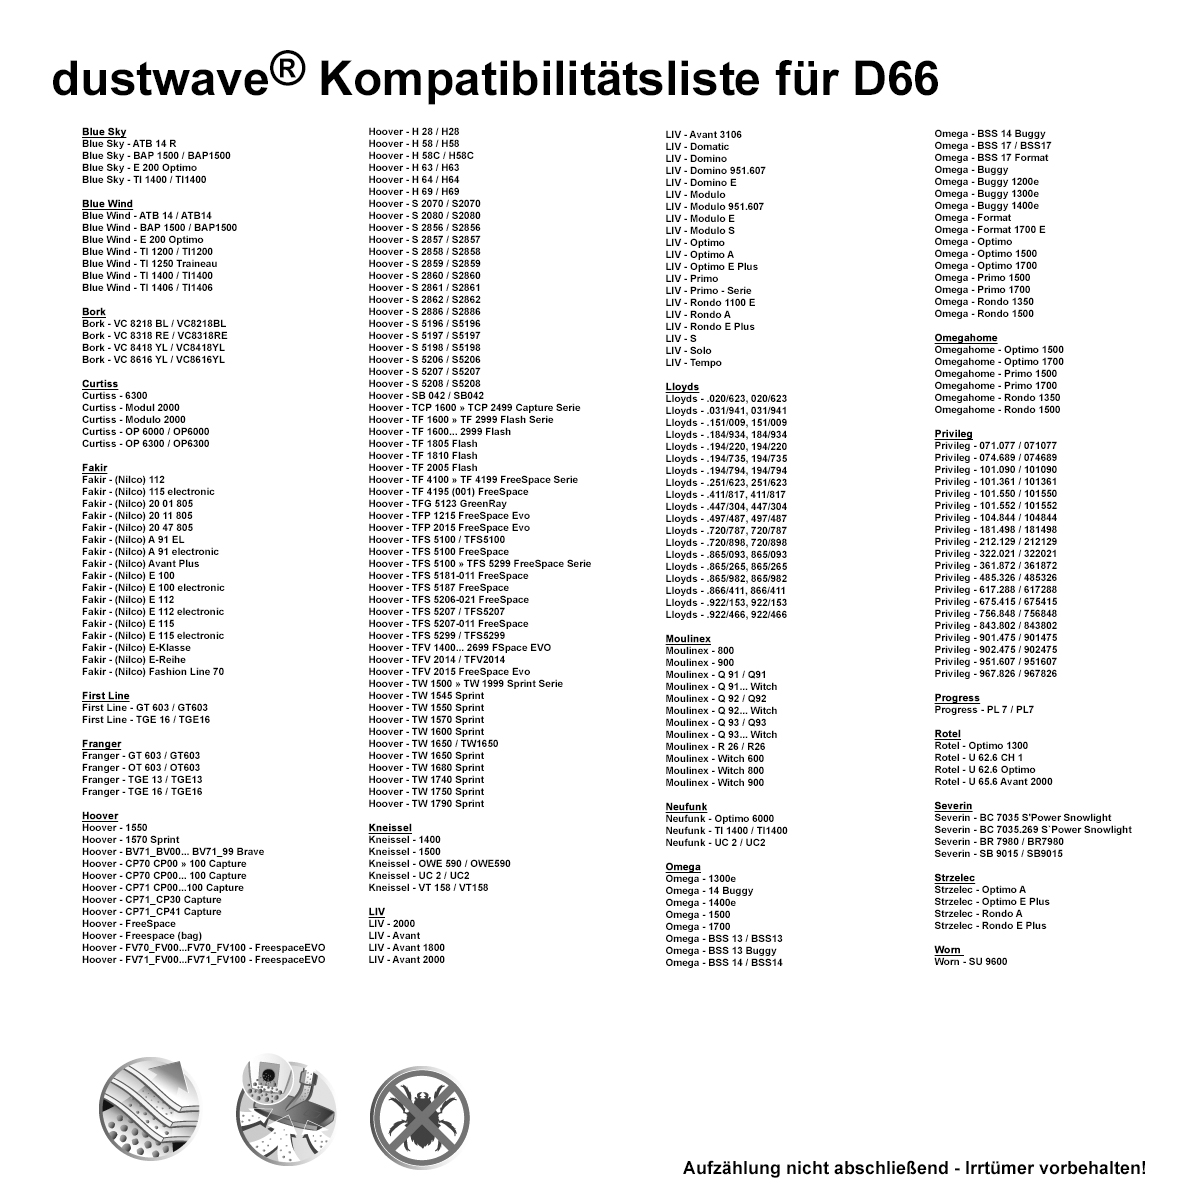 Dustwave® 20 Staubsaugerbeutel für Hoover BV71_BV10011 700 - hocheffizient, mehrlagiges Mikrovlies mit Hygieneverschluss - Made in Germany